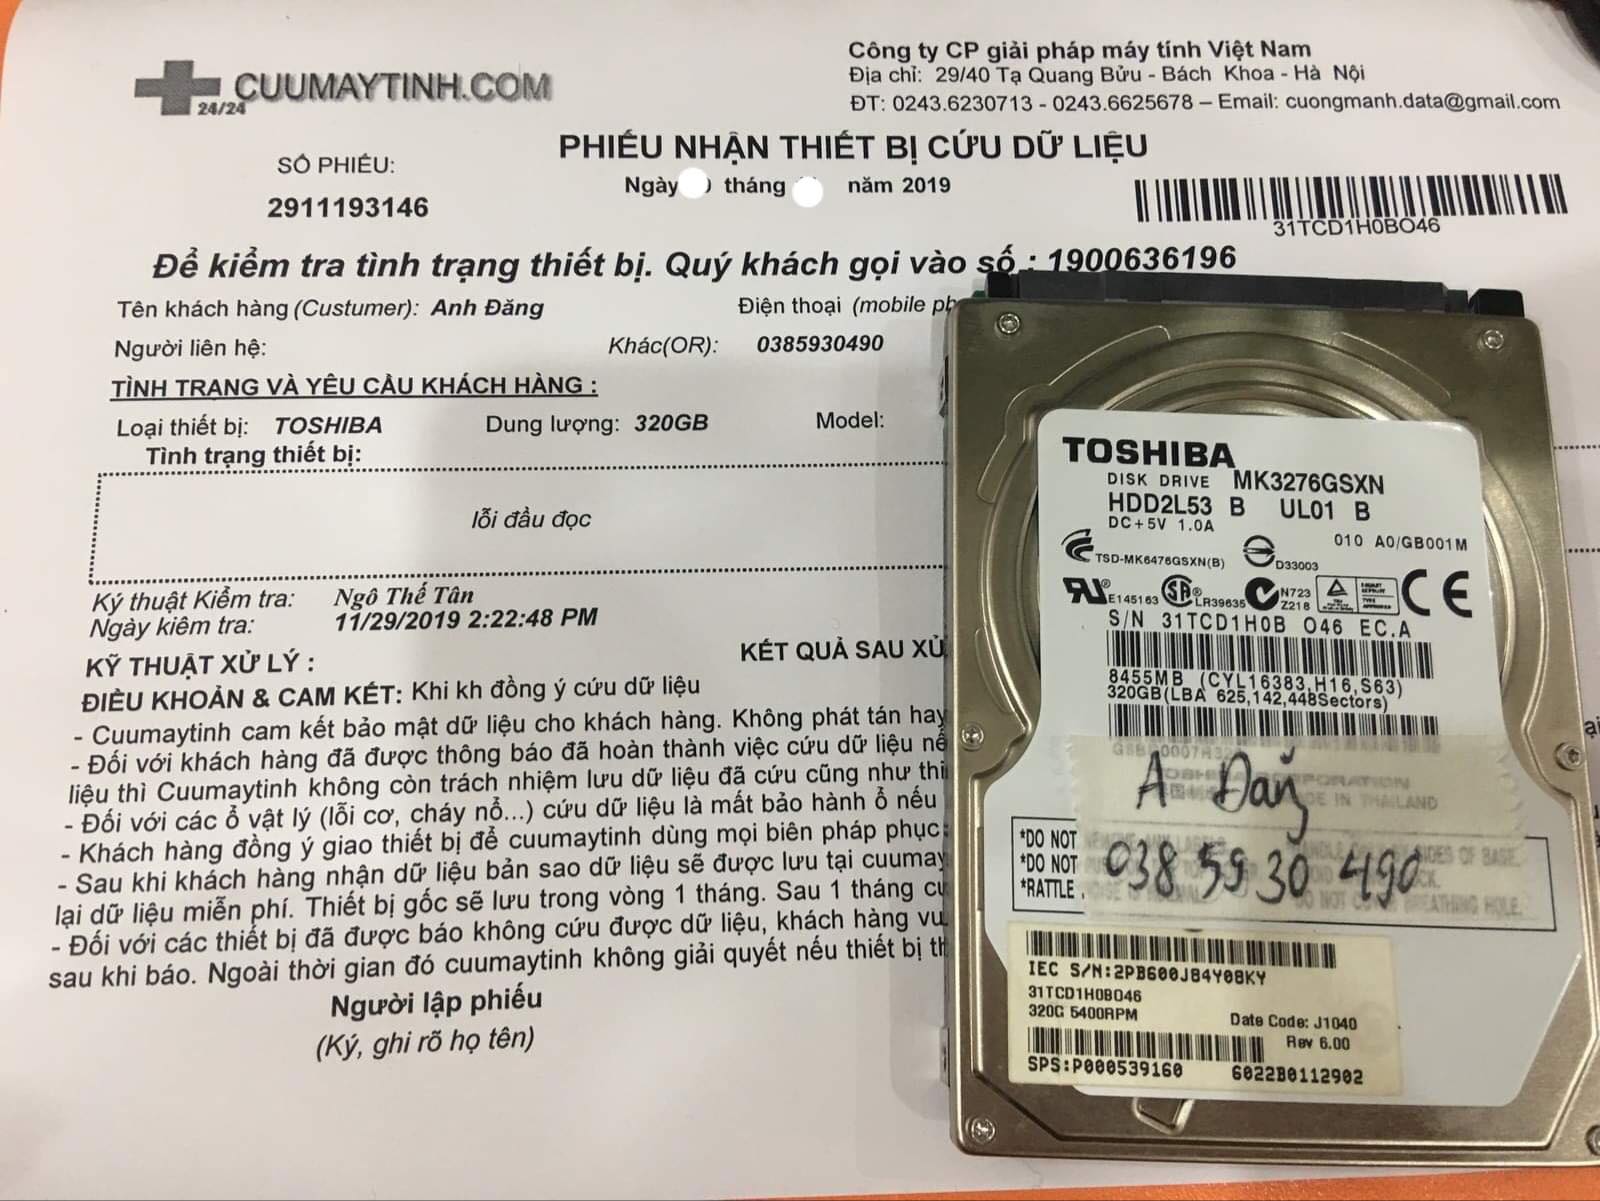 Cứu dữ liệu ổ cứng Toshiba 320GB lỗi đầu đọc 18/12/2019 - cuumaytinh